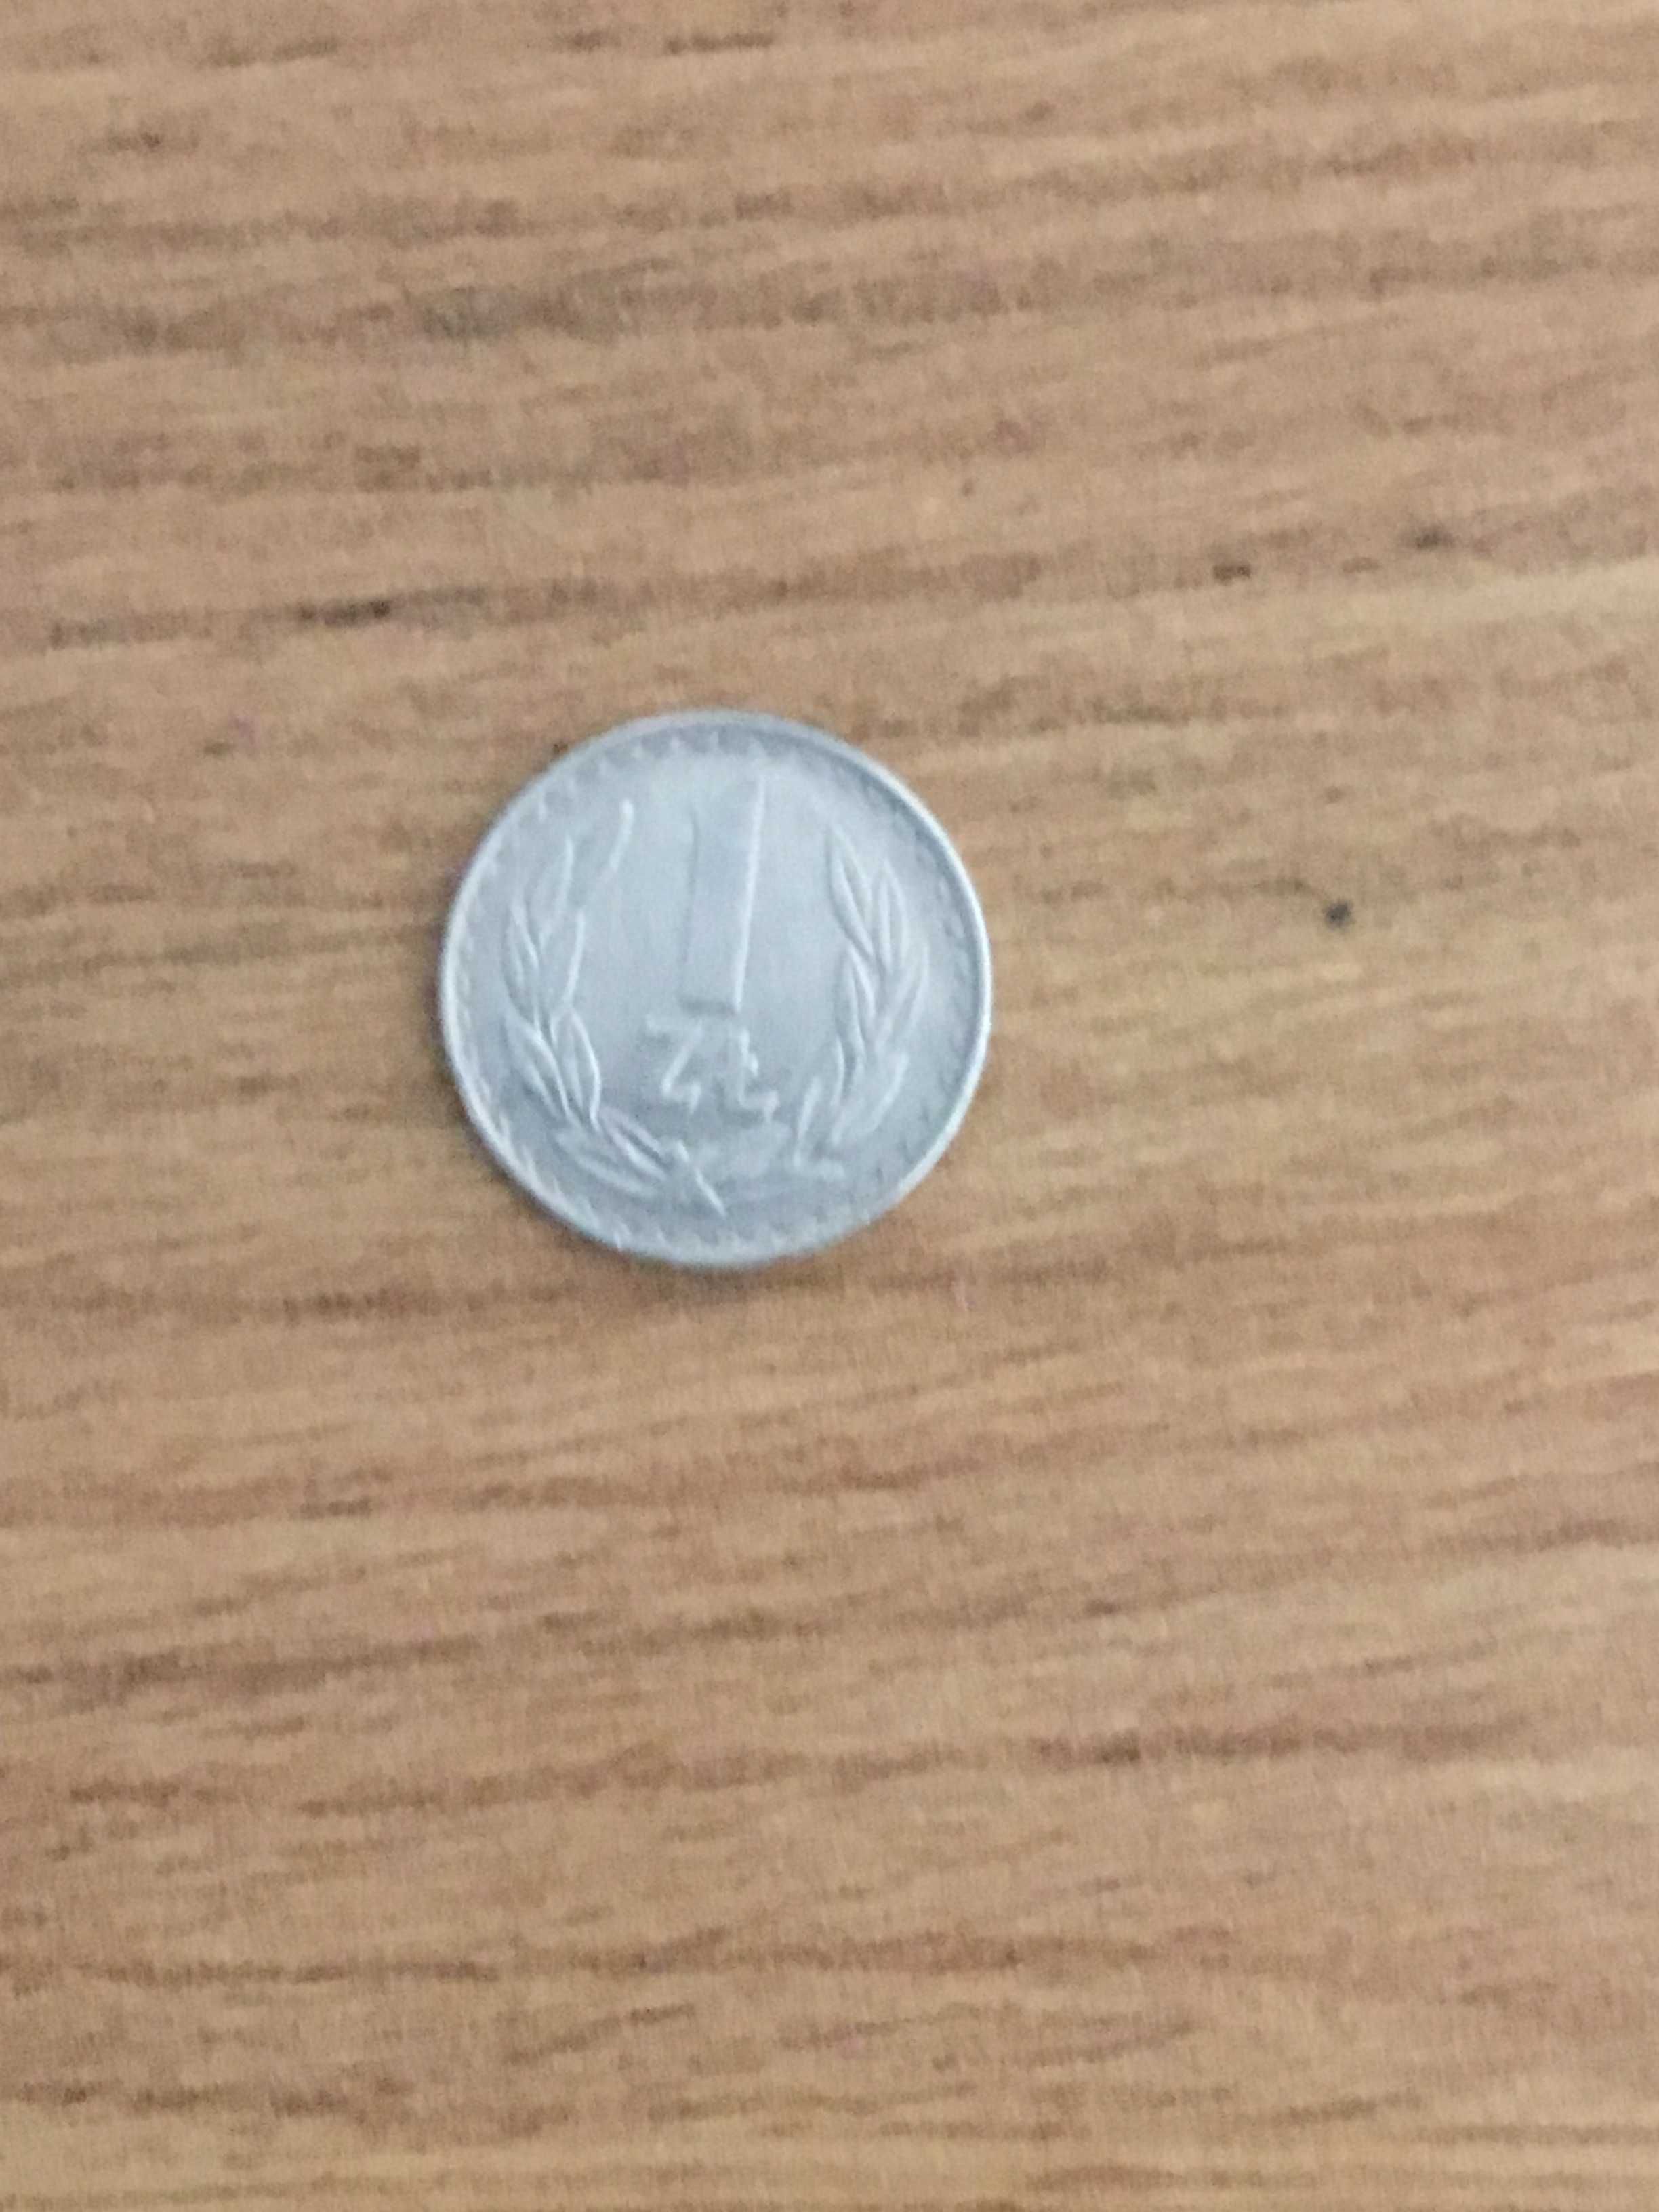 Moneta 1 zl 1975